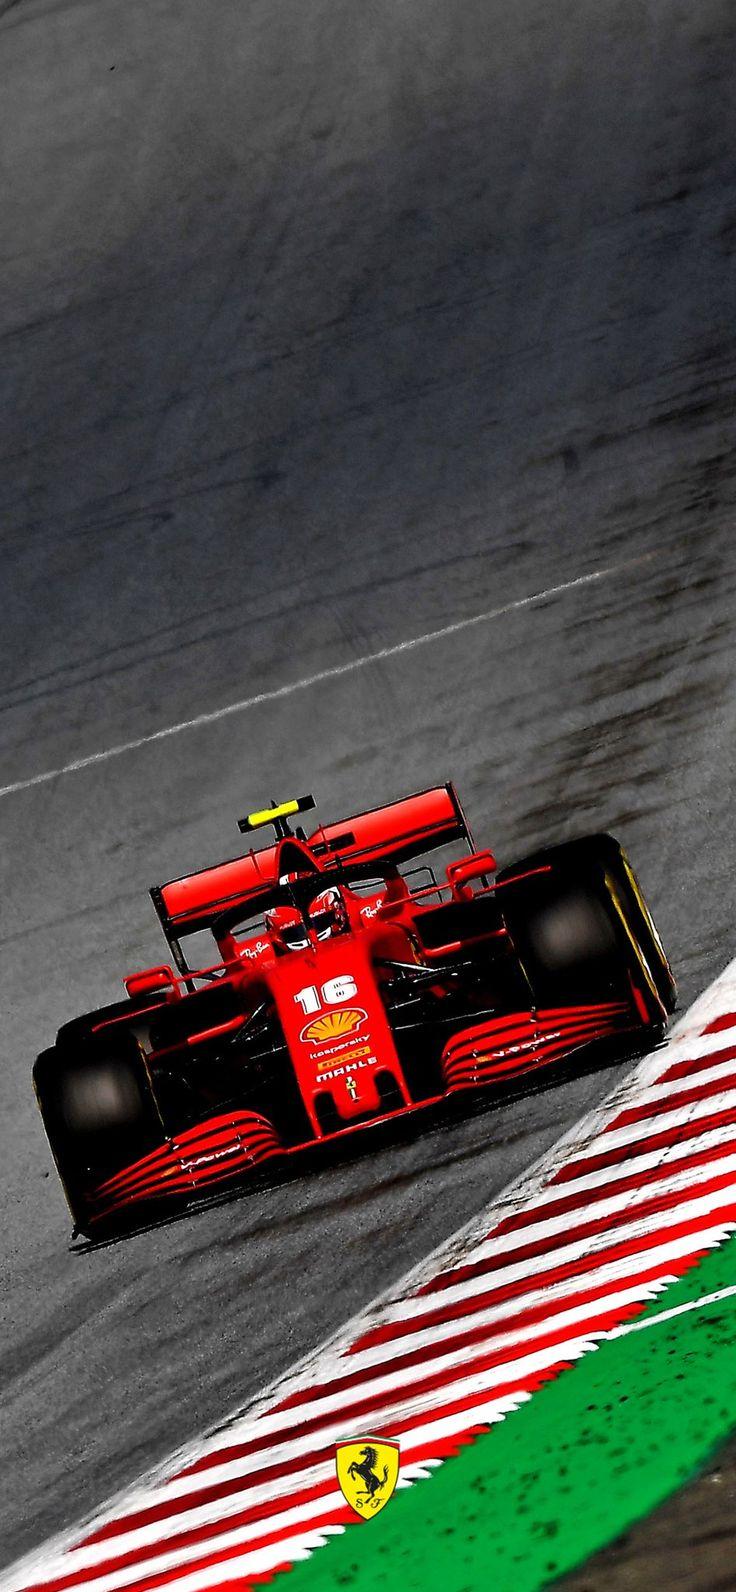 Scuderia Ferrari On F1 Car Wallpaper